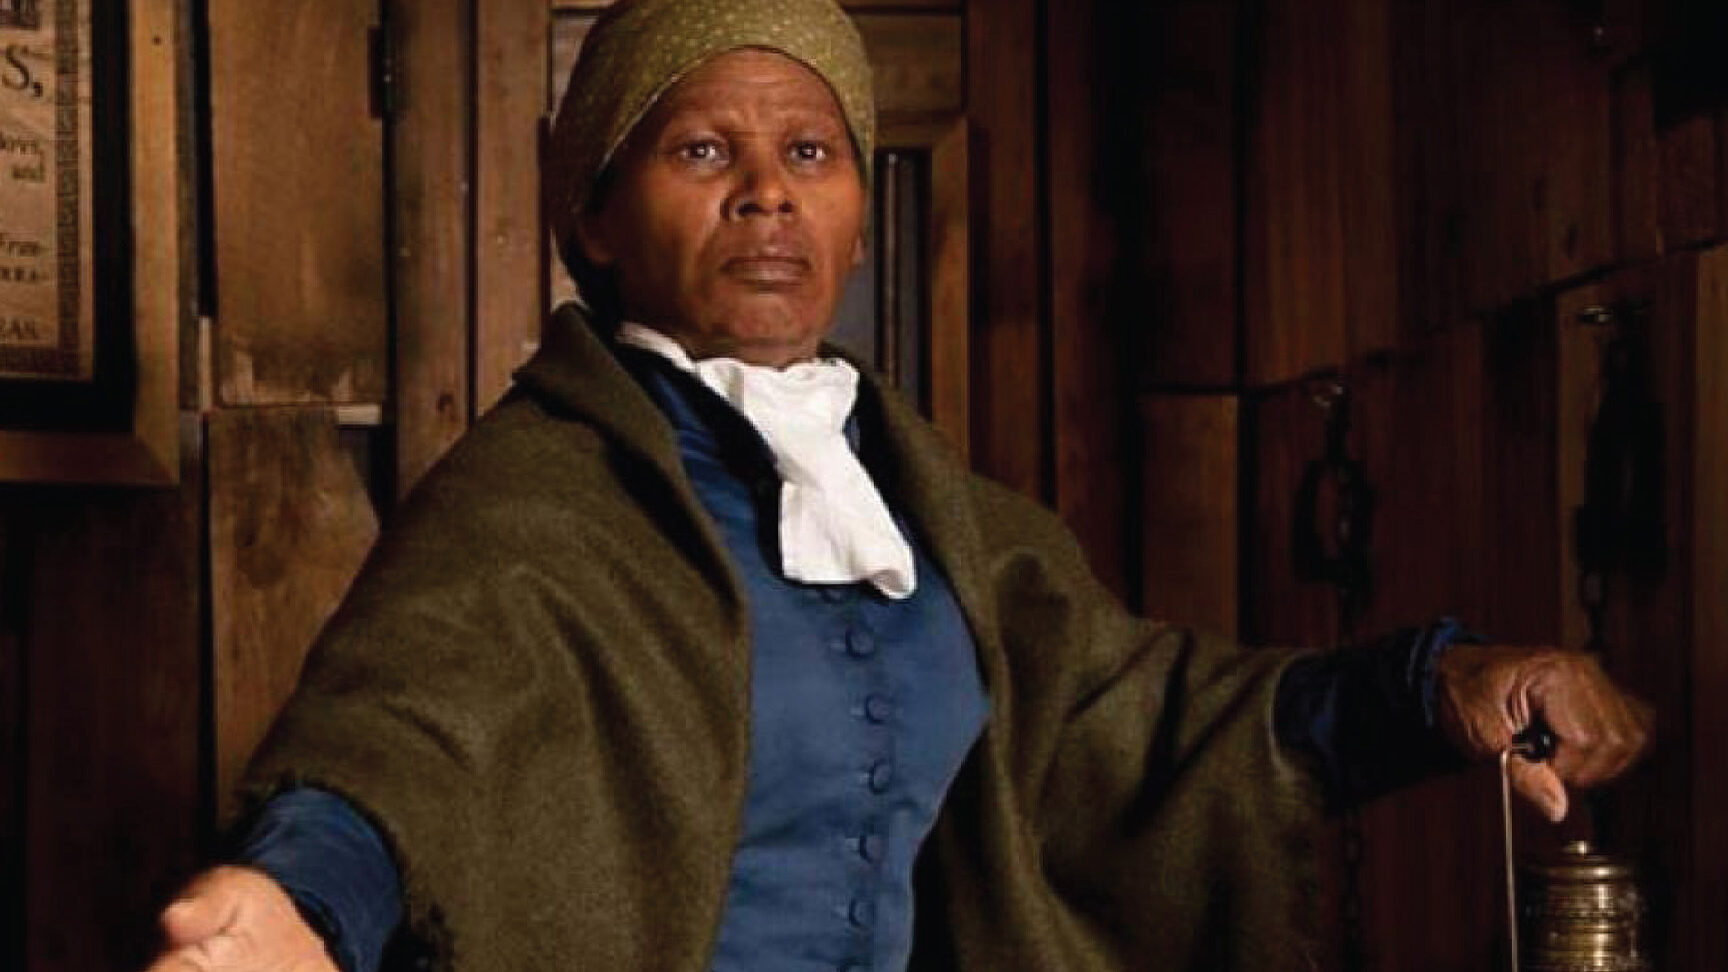 La vida y legado de Harriet Tubman, la heroína abolicionista.